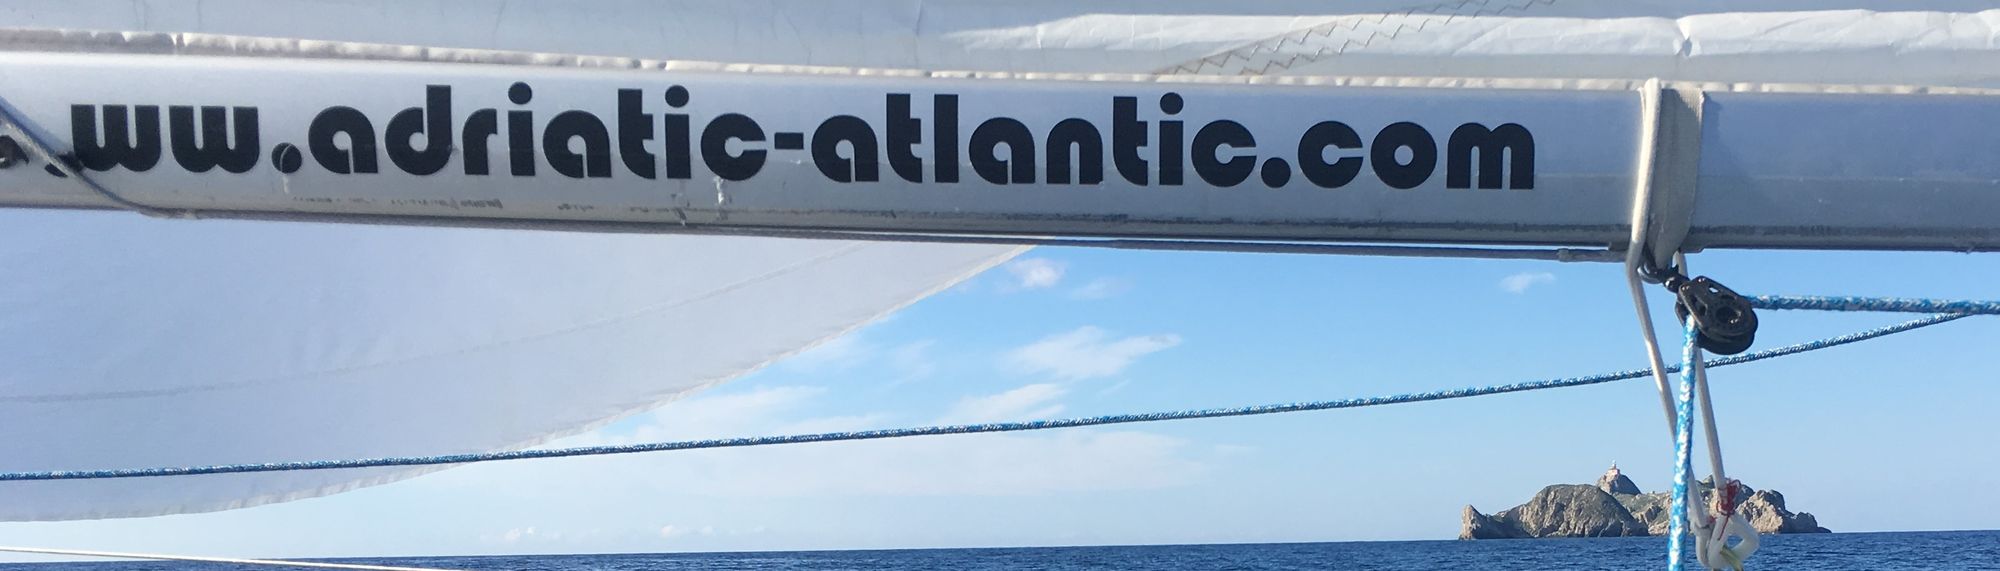 Adriatic Atlantic